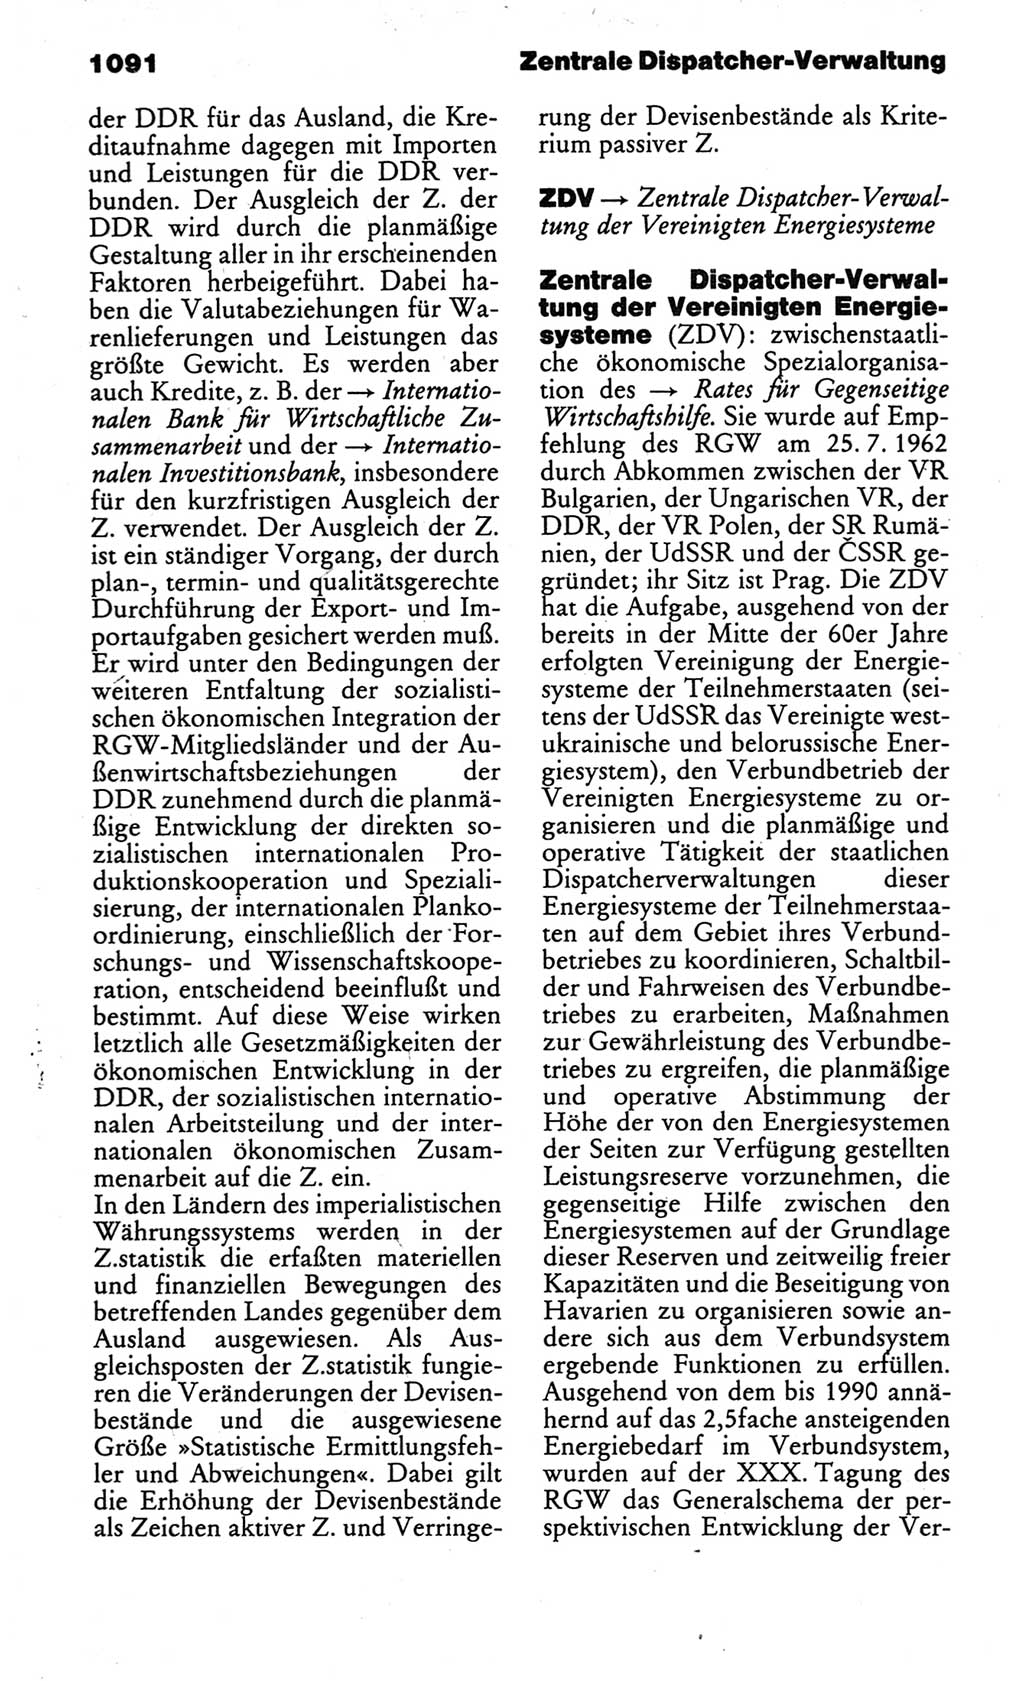 Kleines politisches Wörterbuch [Deutsche Demokratische Republik (DDR)] 1986, Seite 1091 (Kl. pol. Wb. DDR 1986, S. 1091)